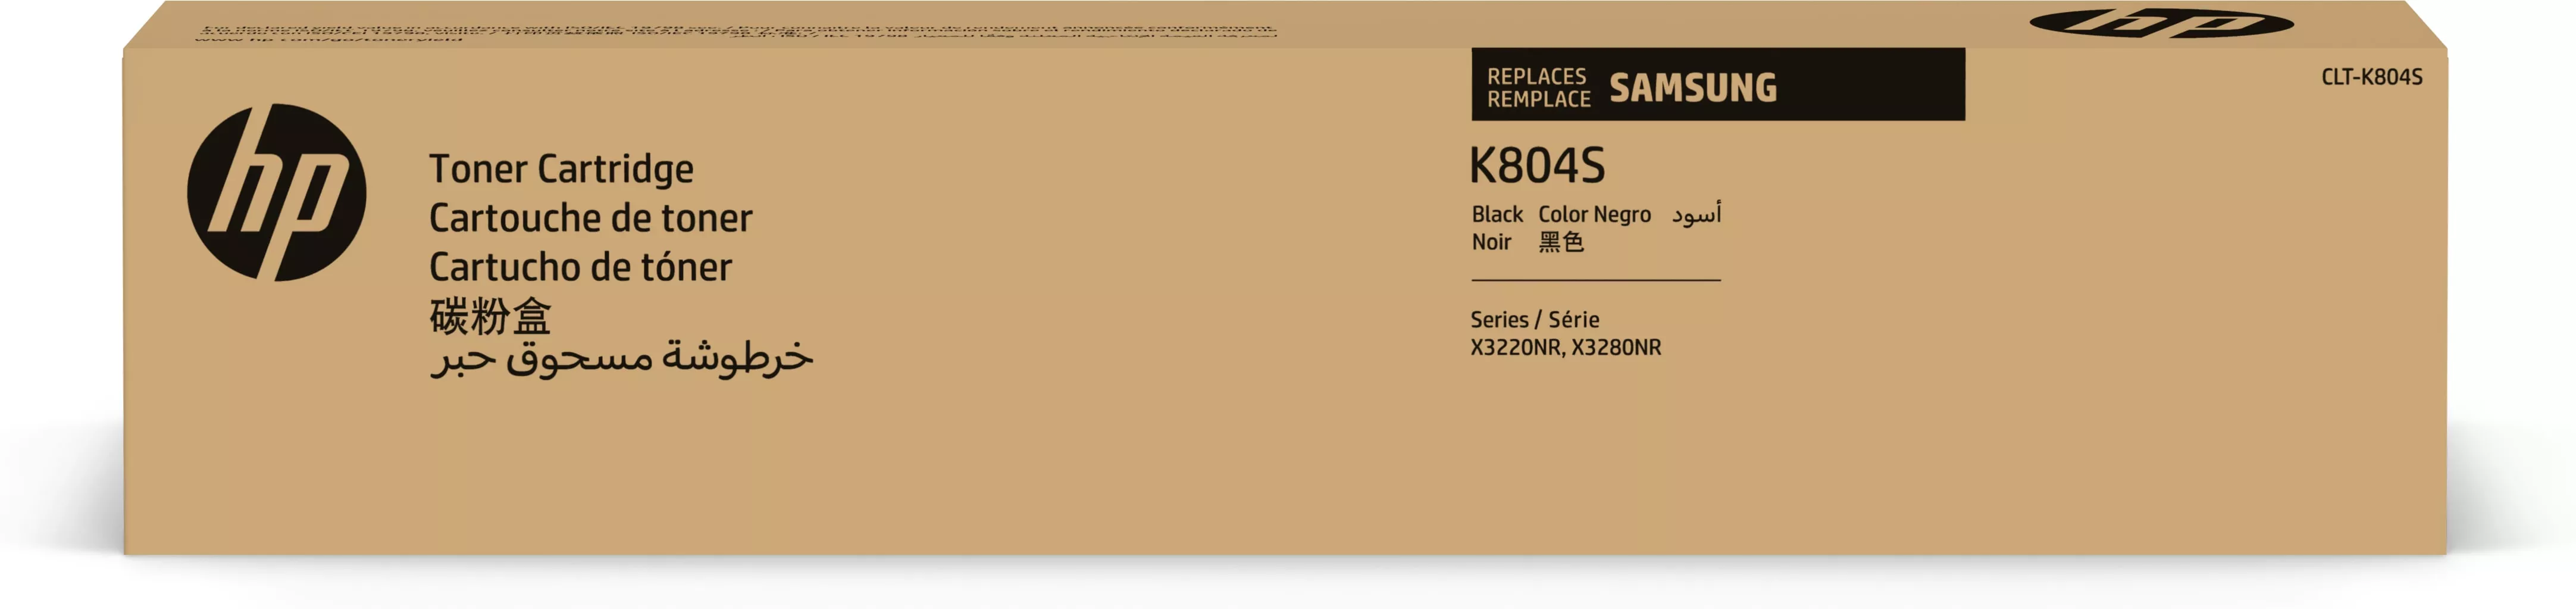 Achat SAMSUNG CLT-K804S/ELS Black Toner Cartridge HP au meilleur prix